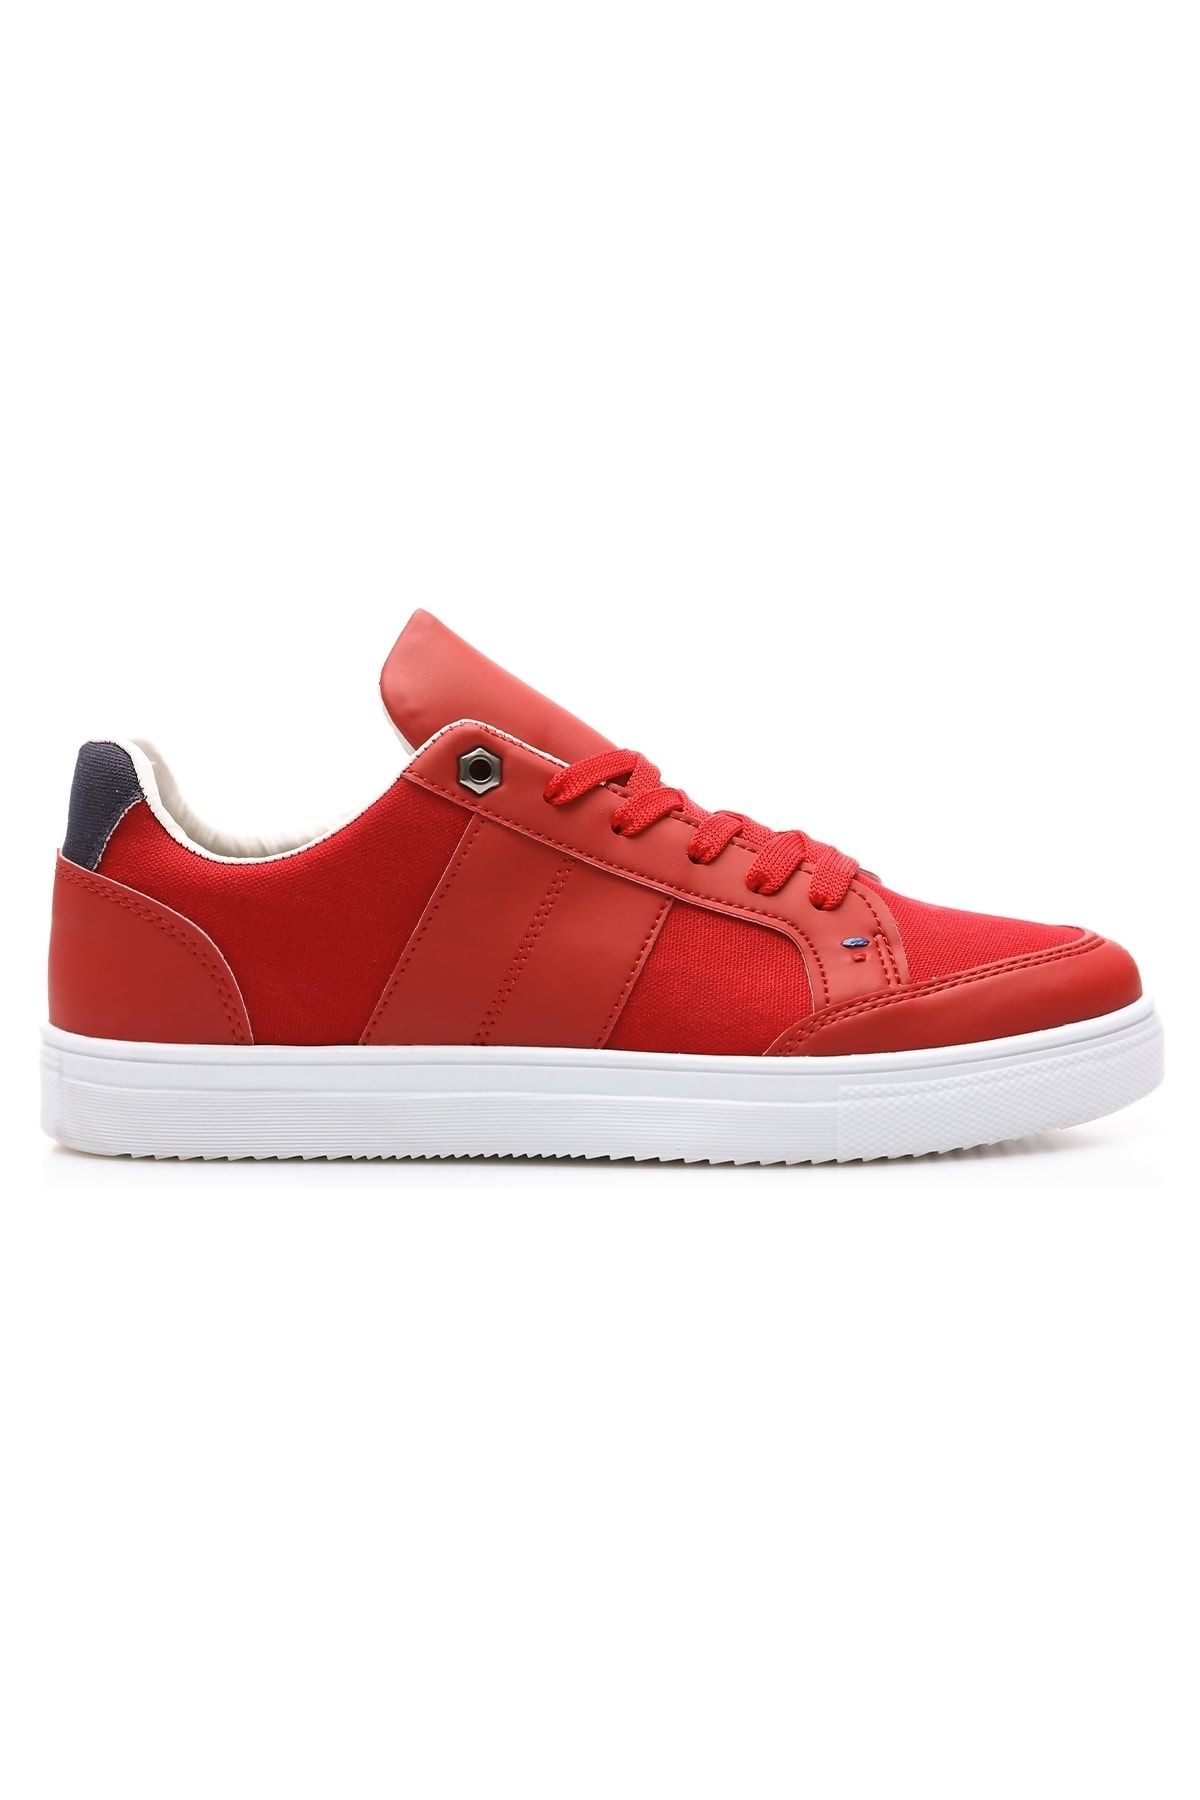 TOMMY LIFE Kırmızı Erkek Bağcıklı Suni Deri Detaylı Spor Ayakkabı-89065